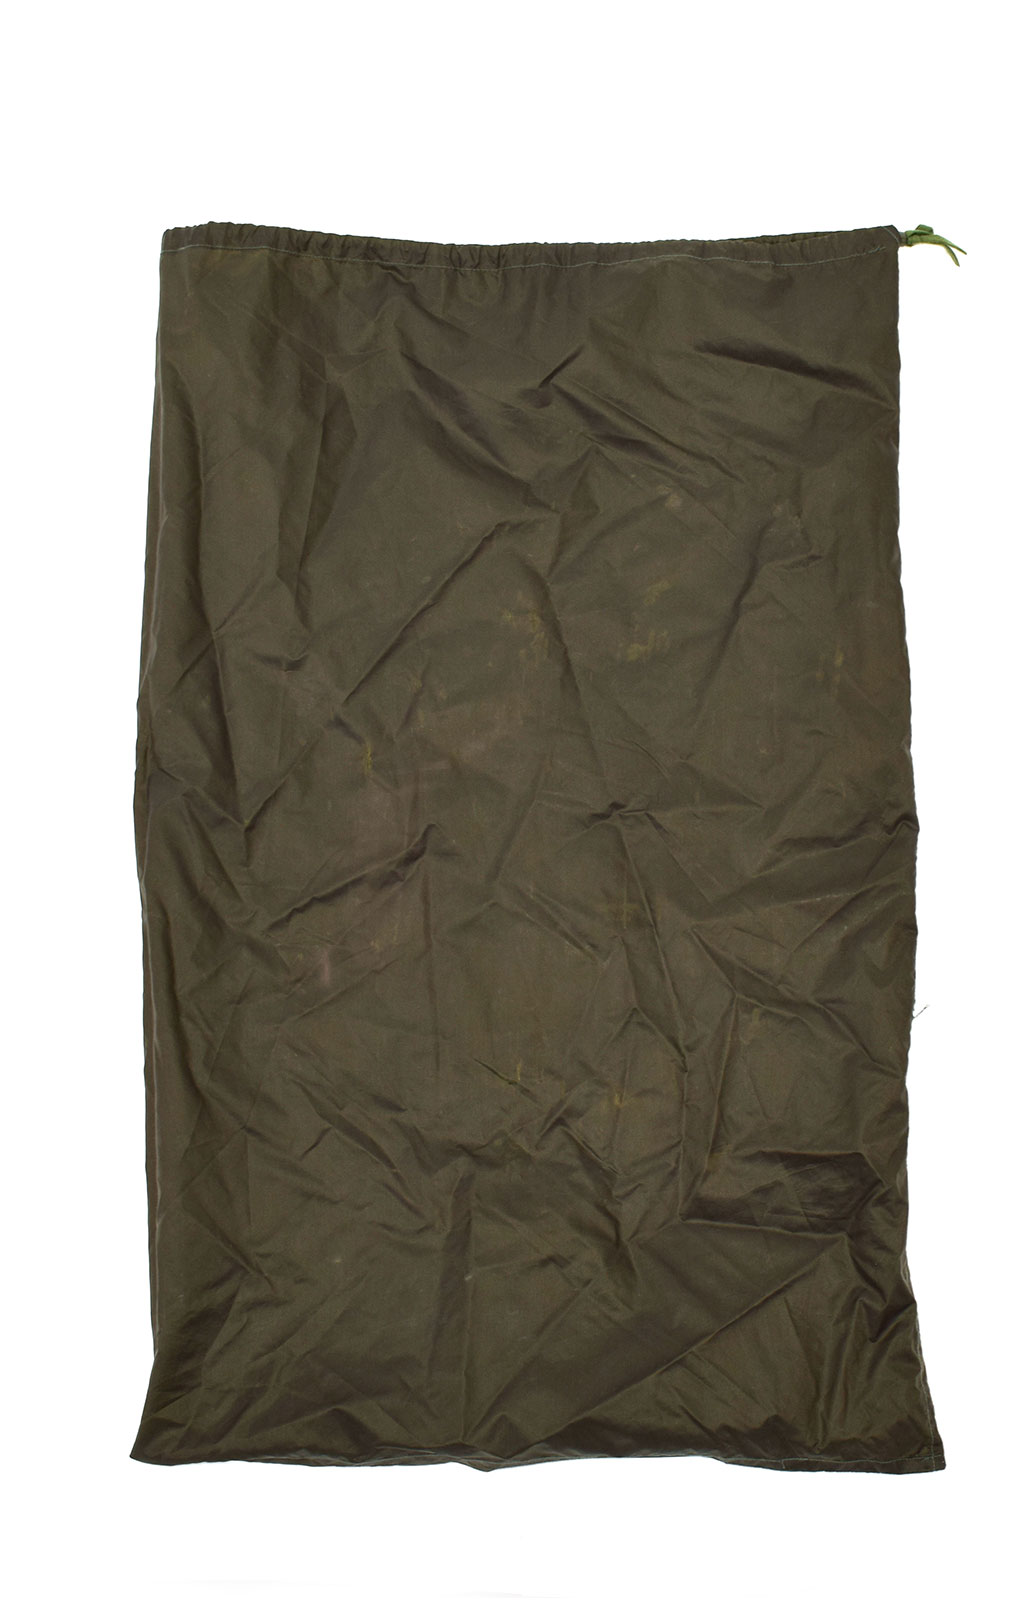 Мешок непромокаемый Bag Insertion Rucksak olive б/у США